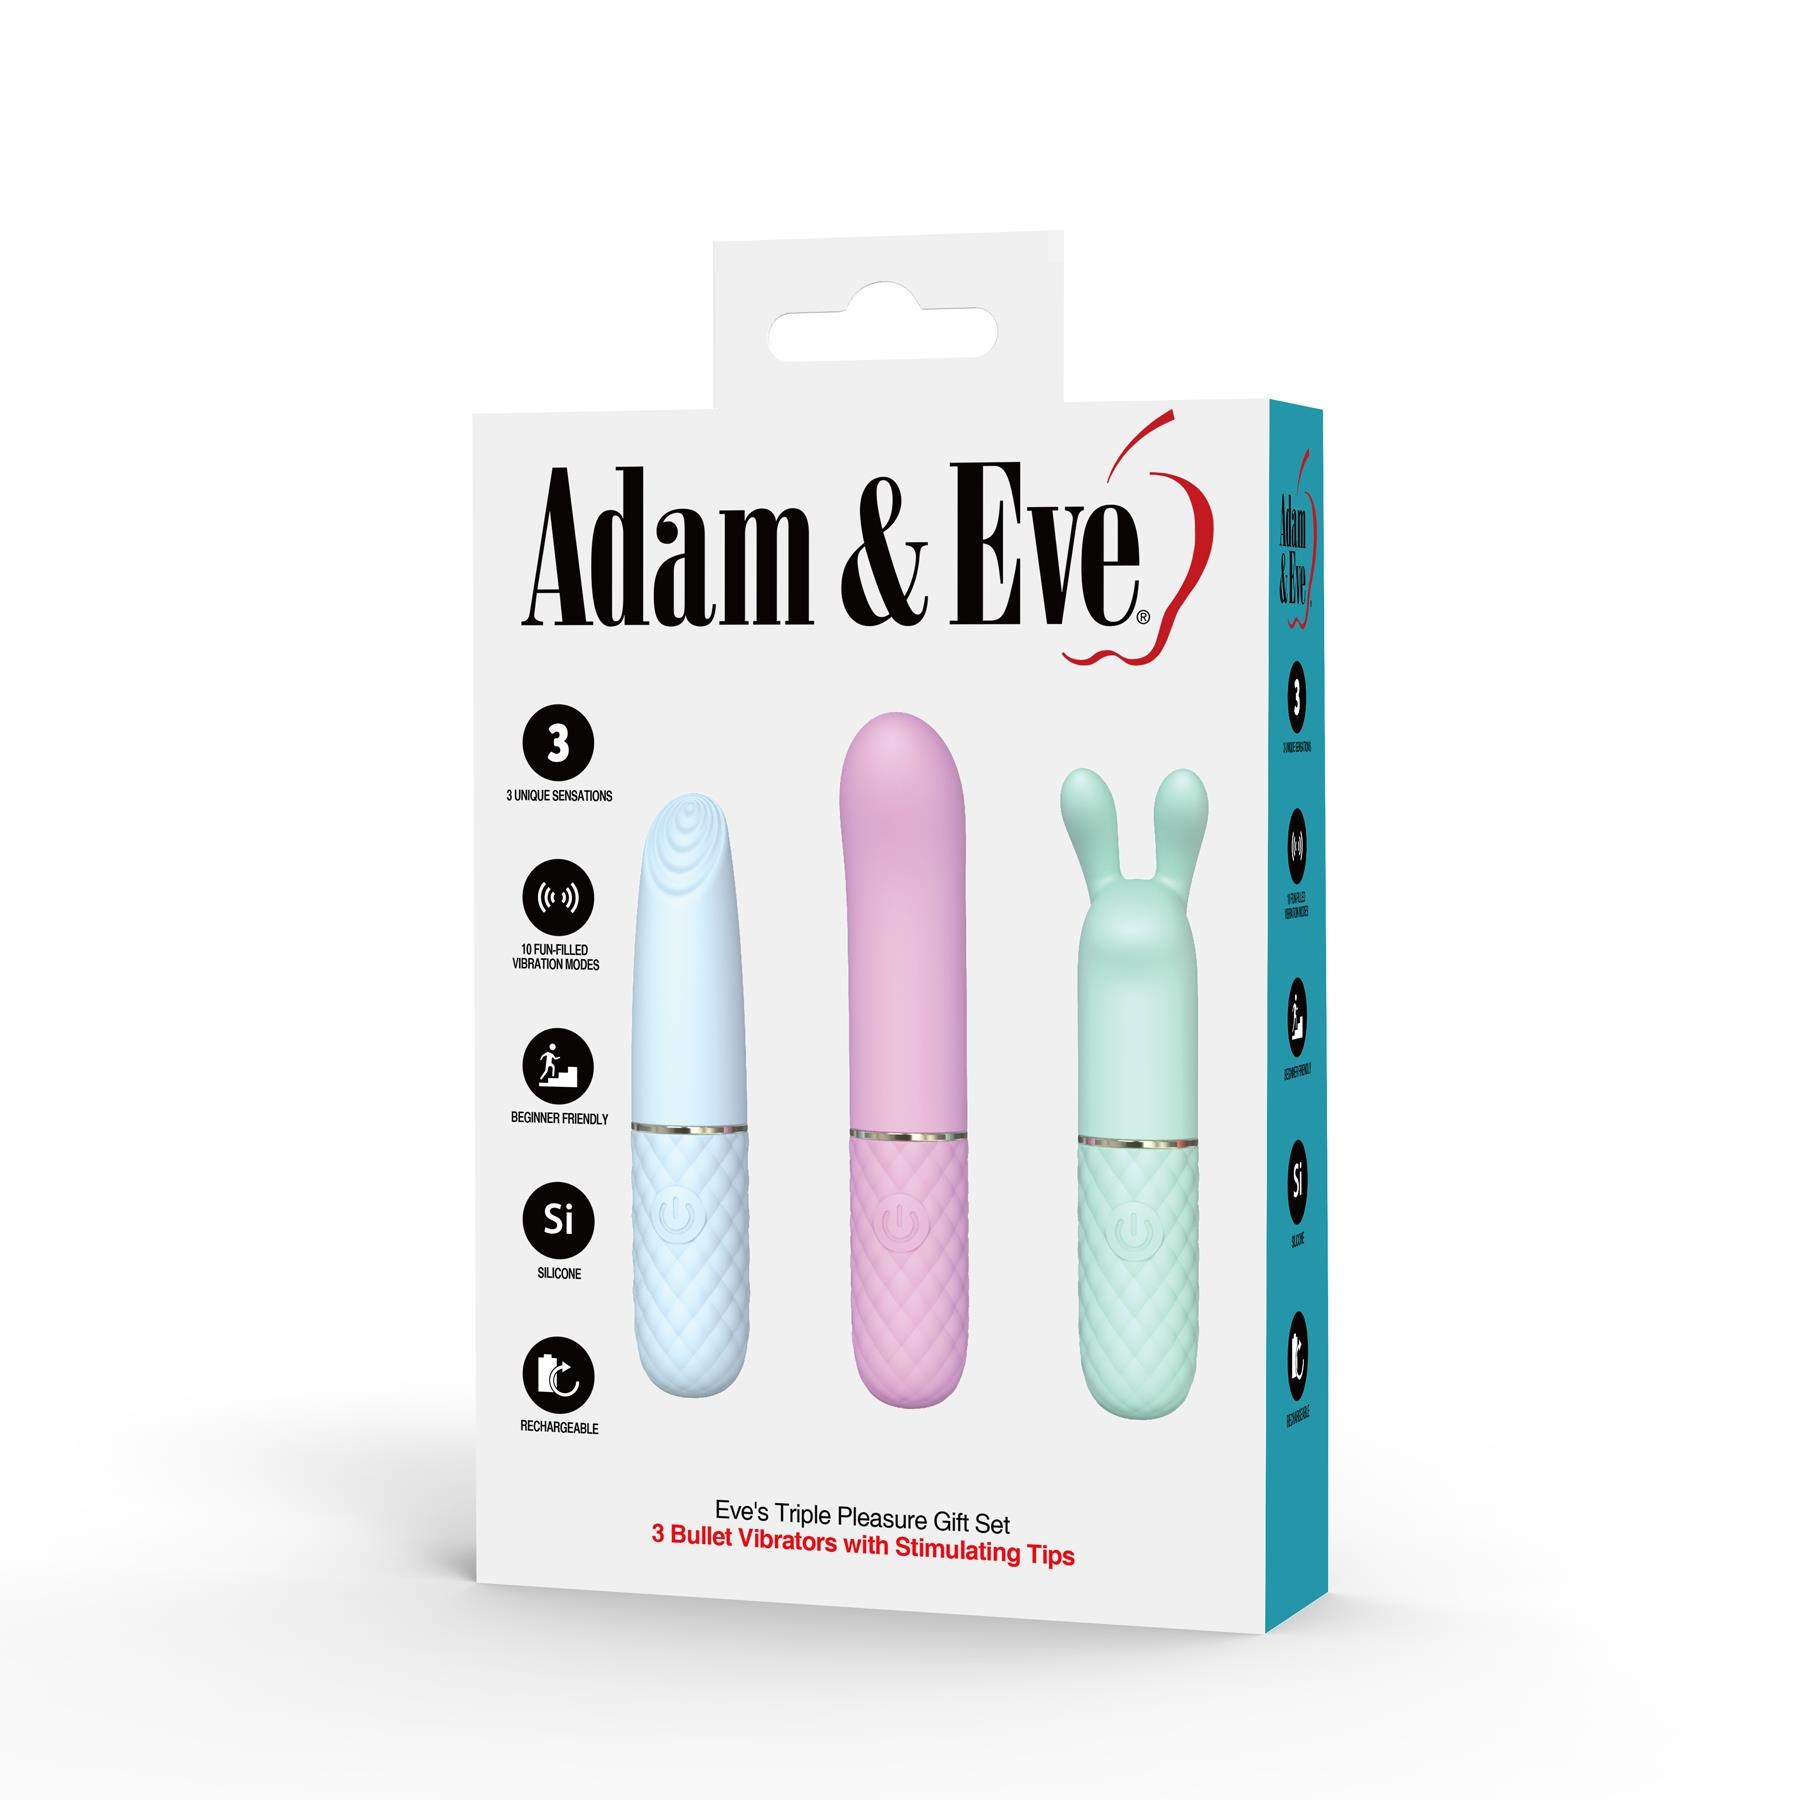 Eve's Triple Pleasure Gift Set - by Adam & Eve - Packaging Shot